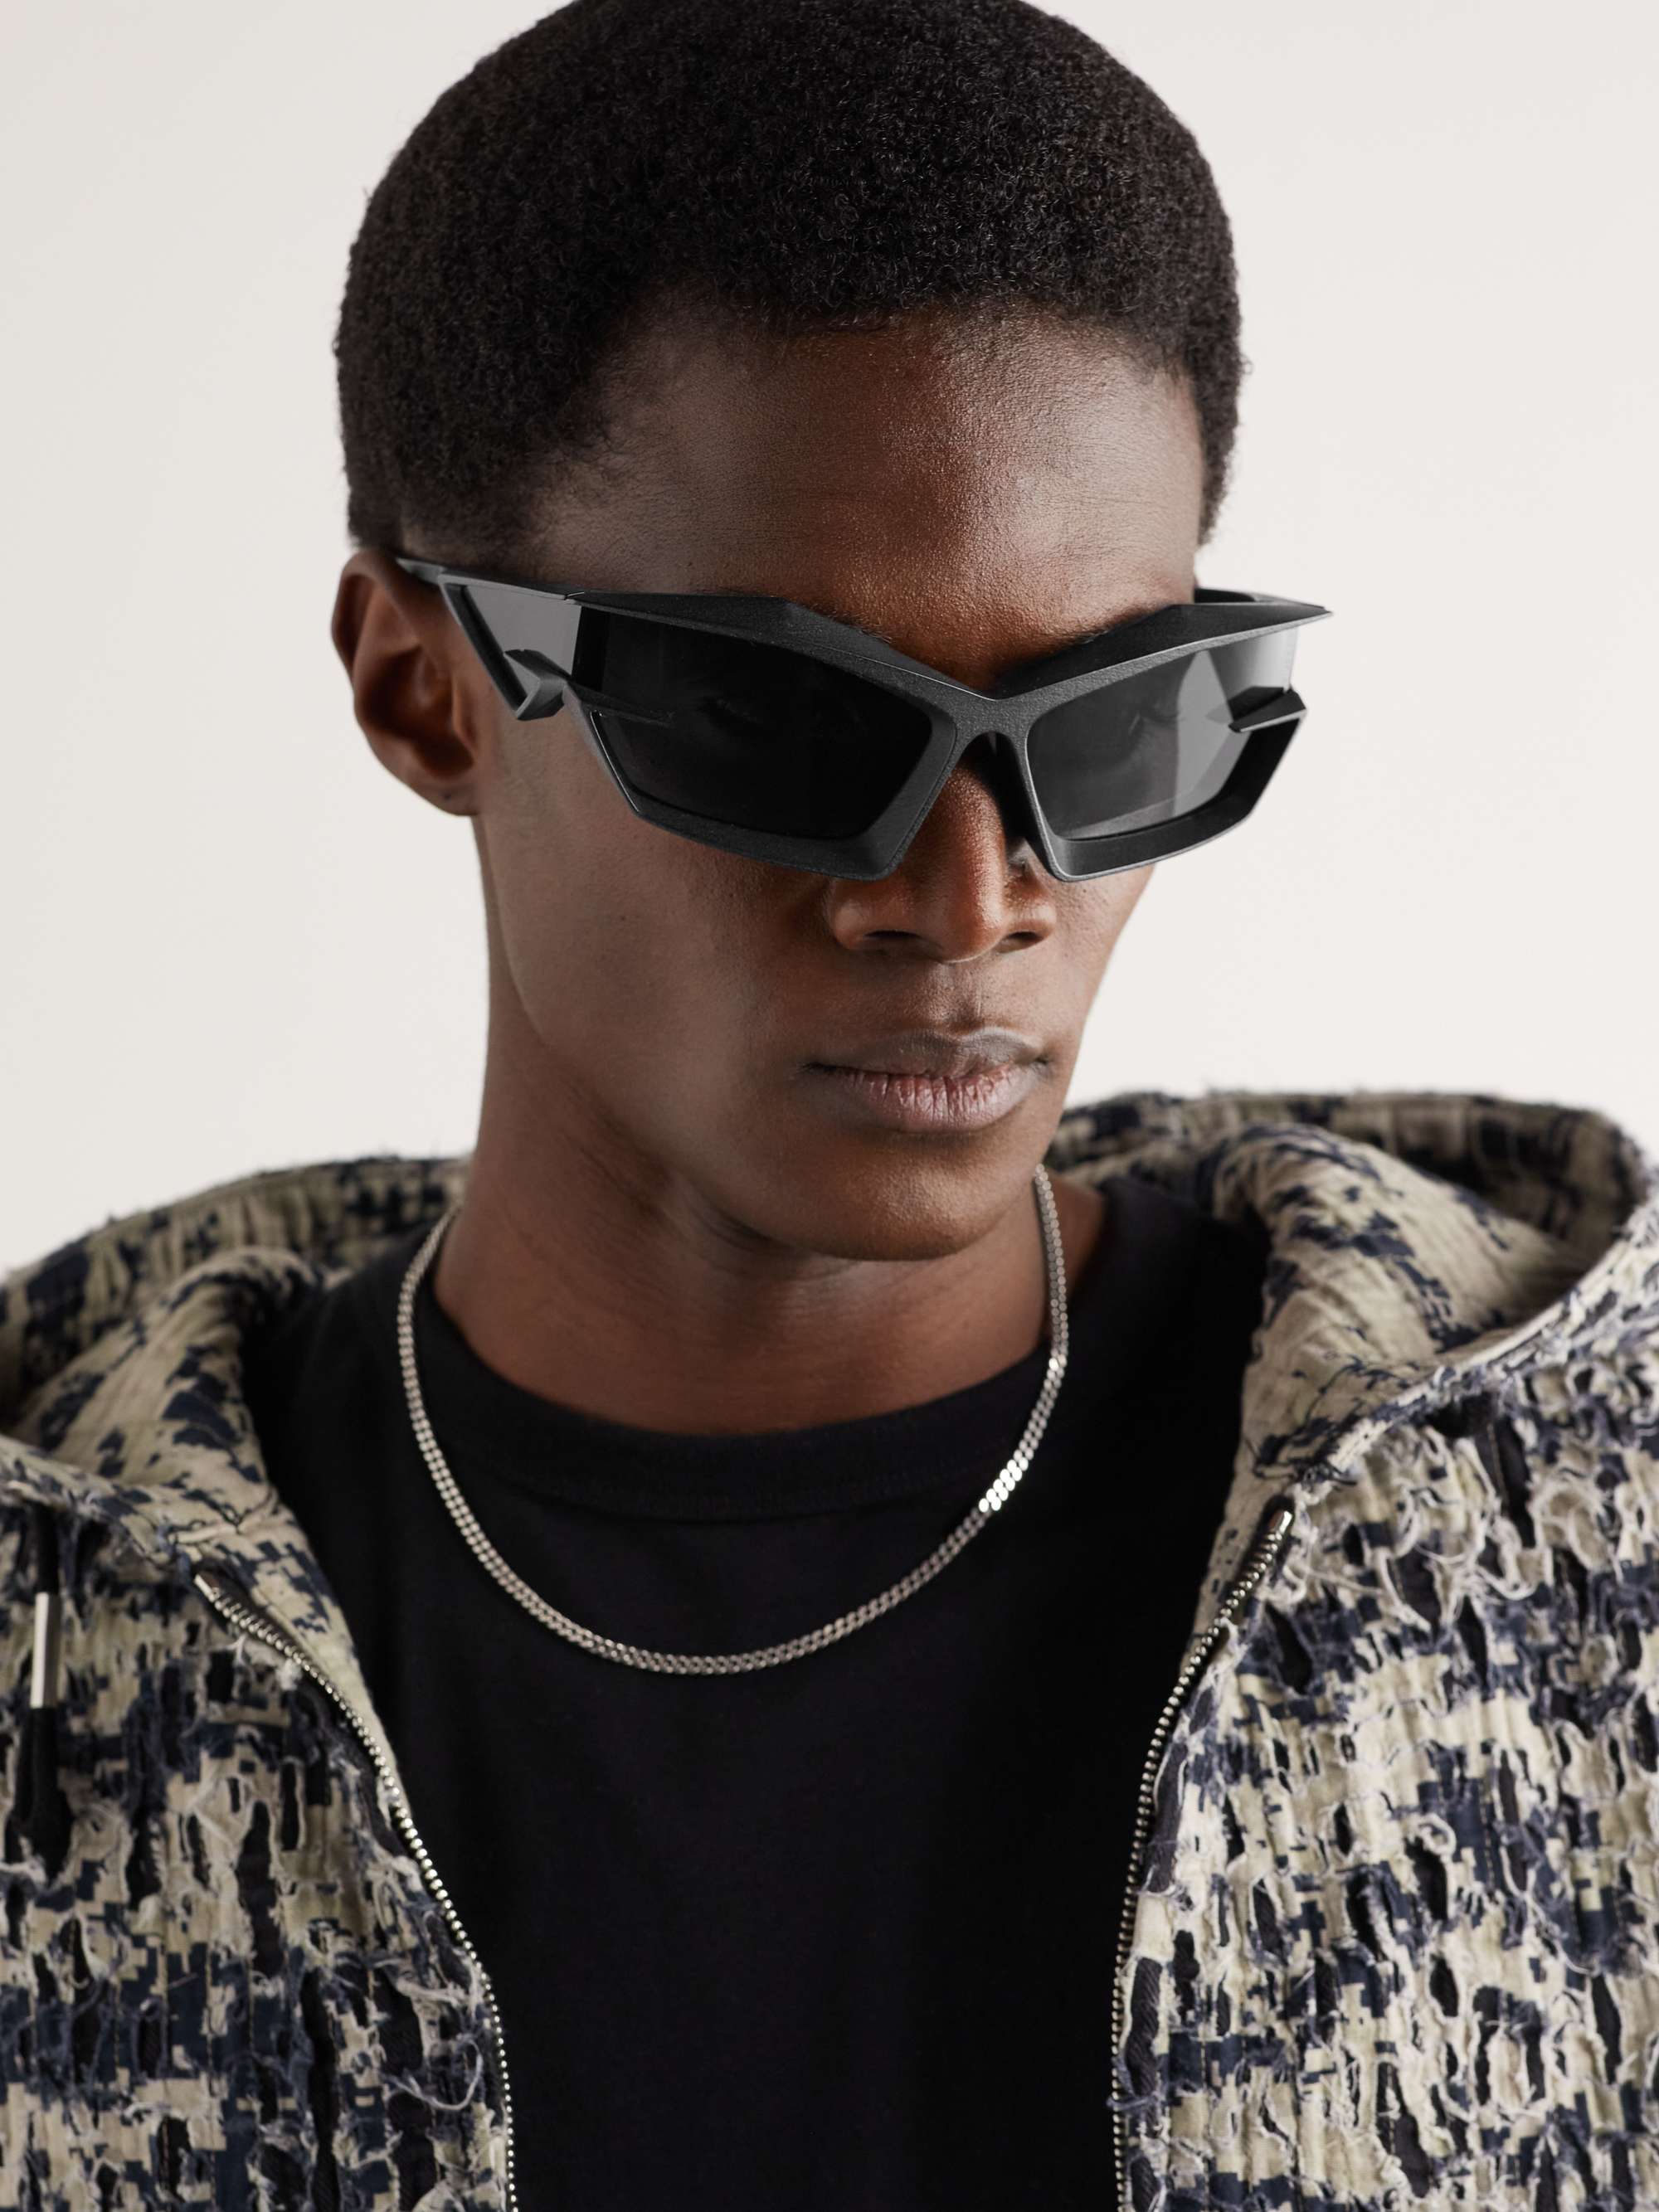 GIVENCHY D-Frame Nylon Sunglasses for Men | MR PORTER